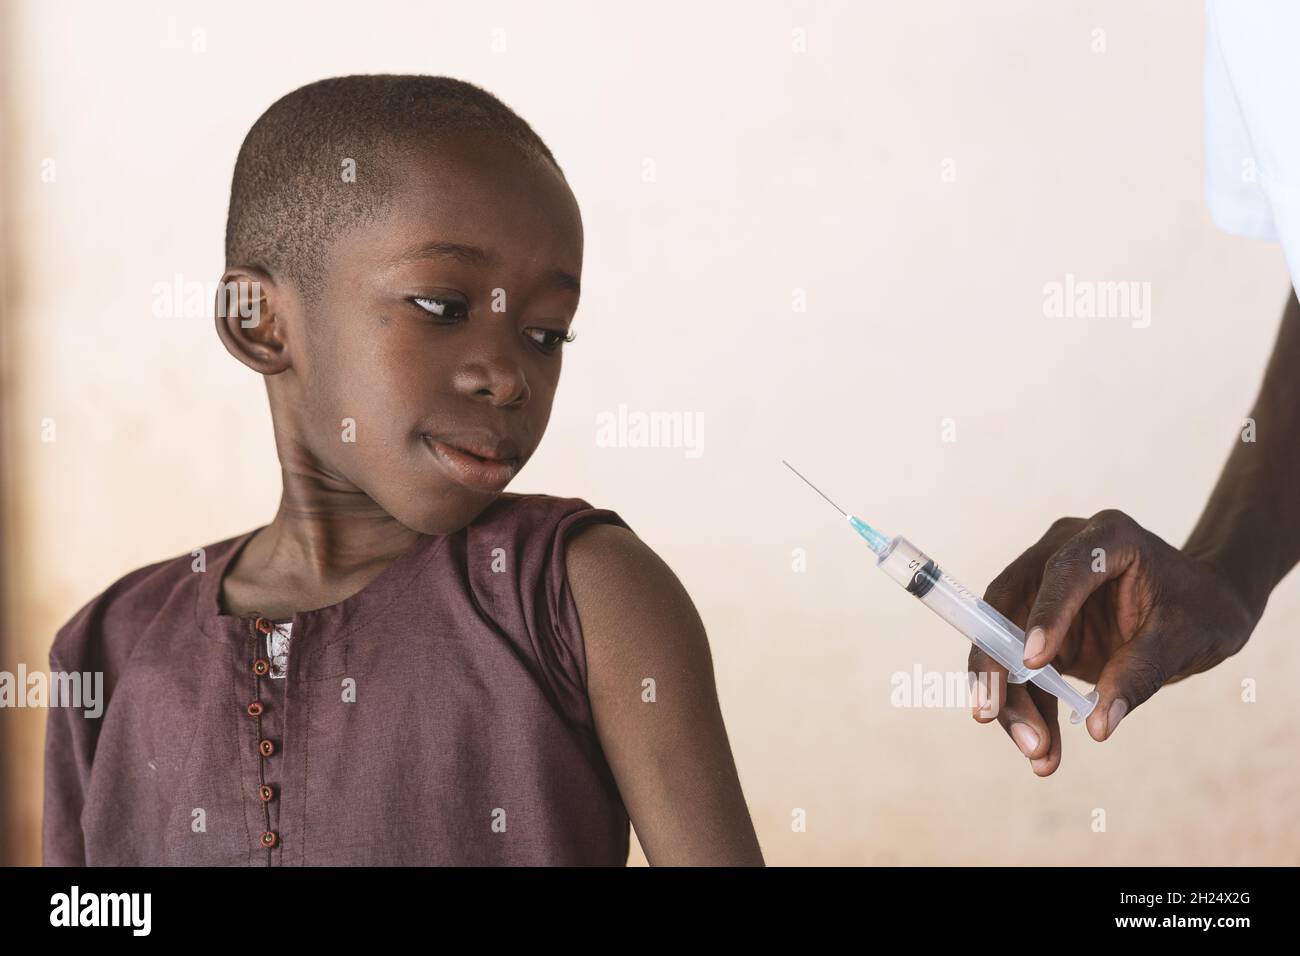 Operatore sanitario che tiene una siringa con vaccino antimalarico da iniettare in un piccolo ragazzo africano nero come parte di un programma di controllo della malaria - Foto Stock